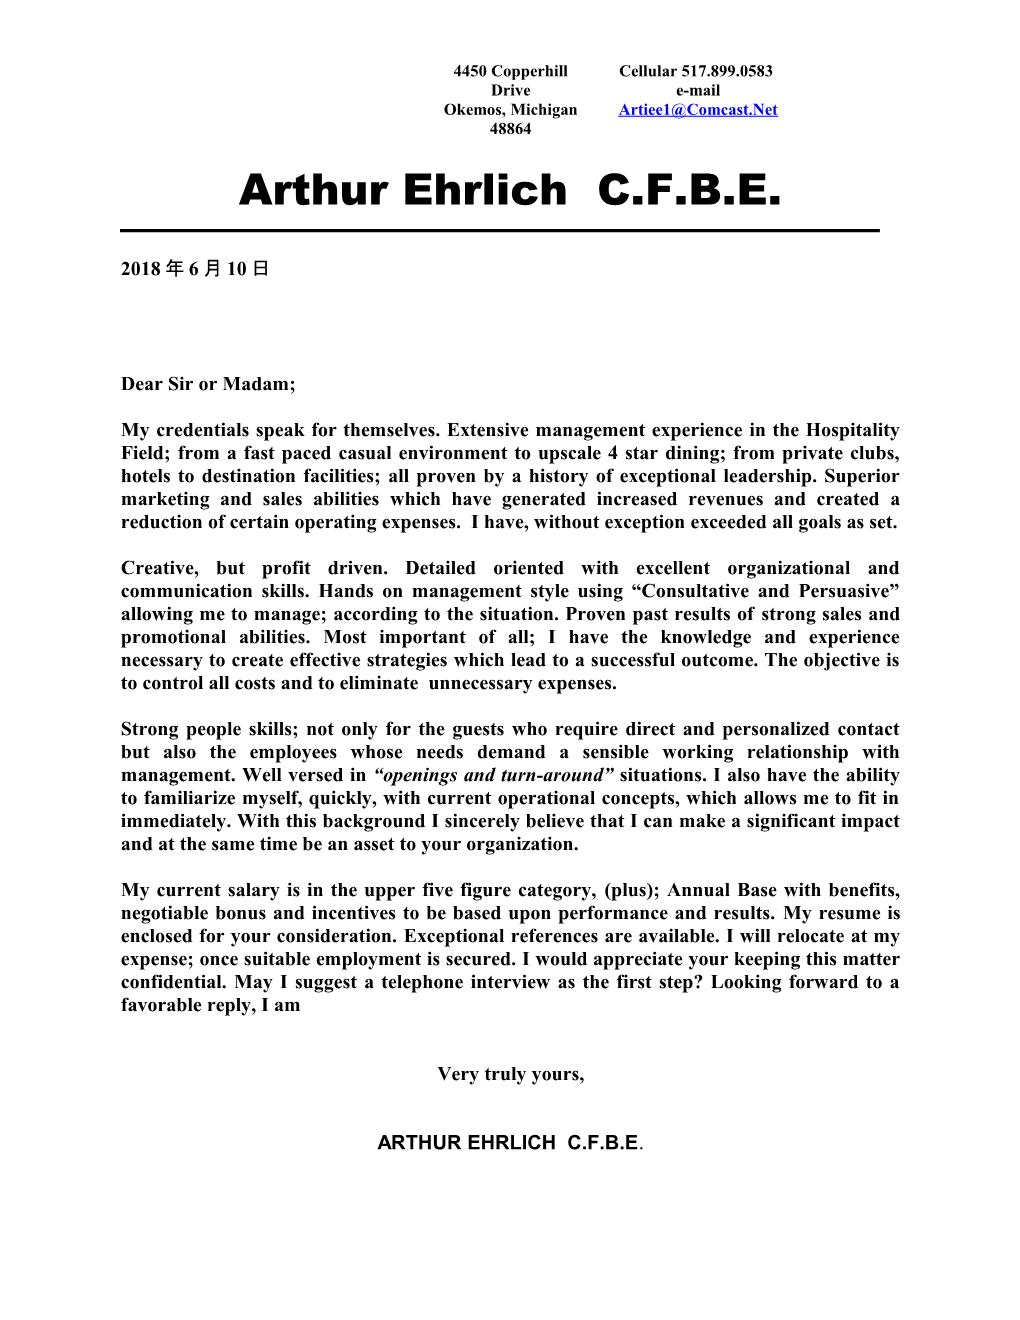 Arthur Ehrlich C.F.B.E